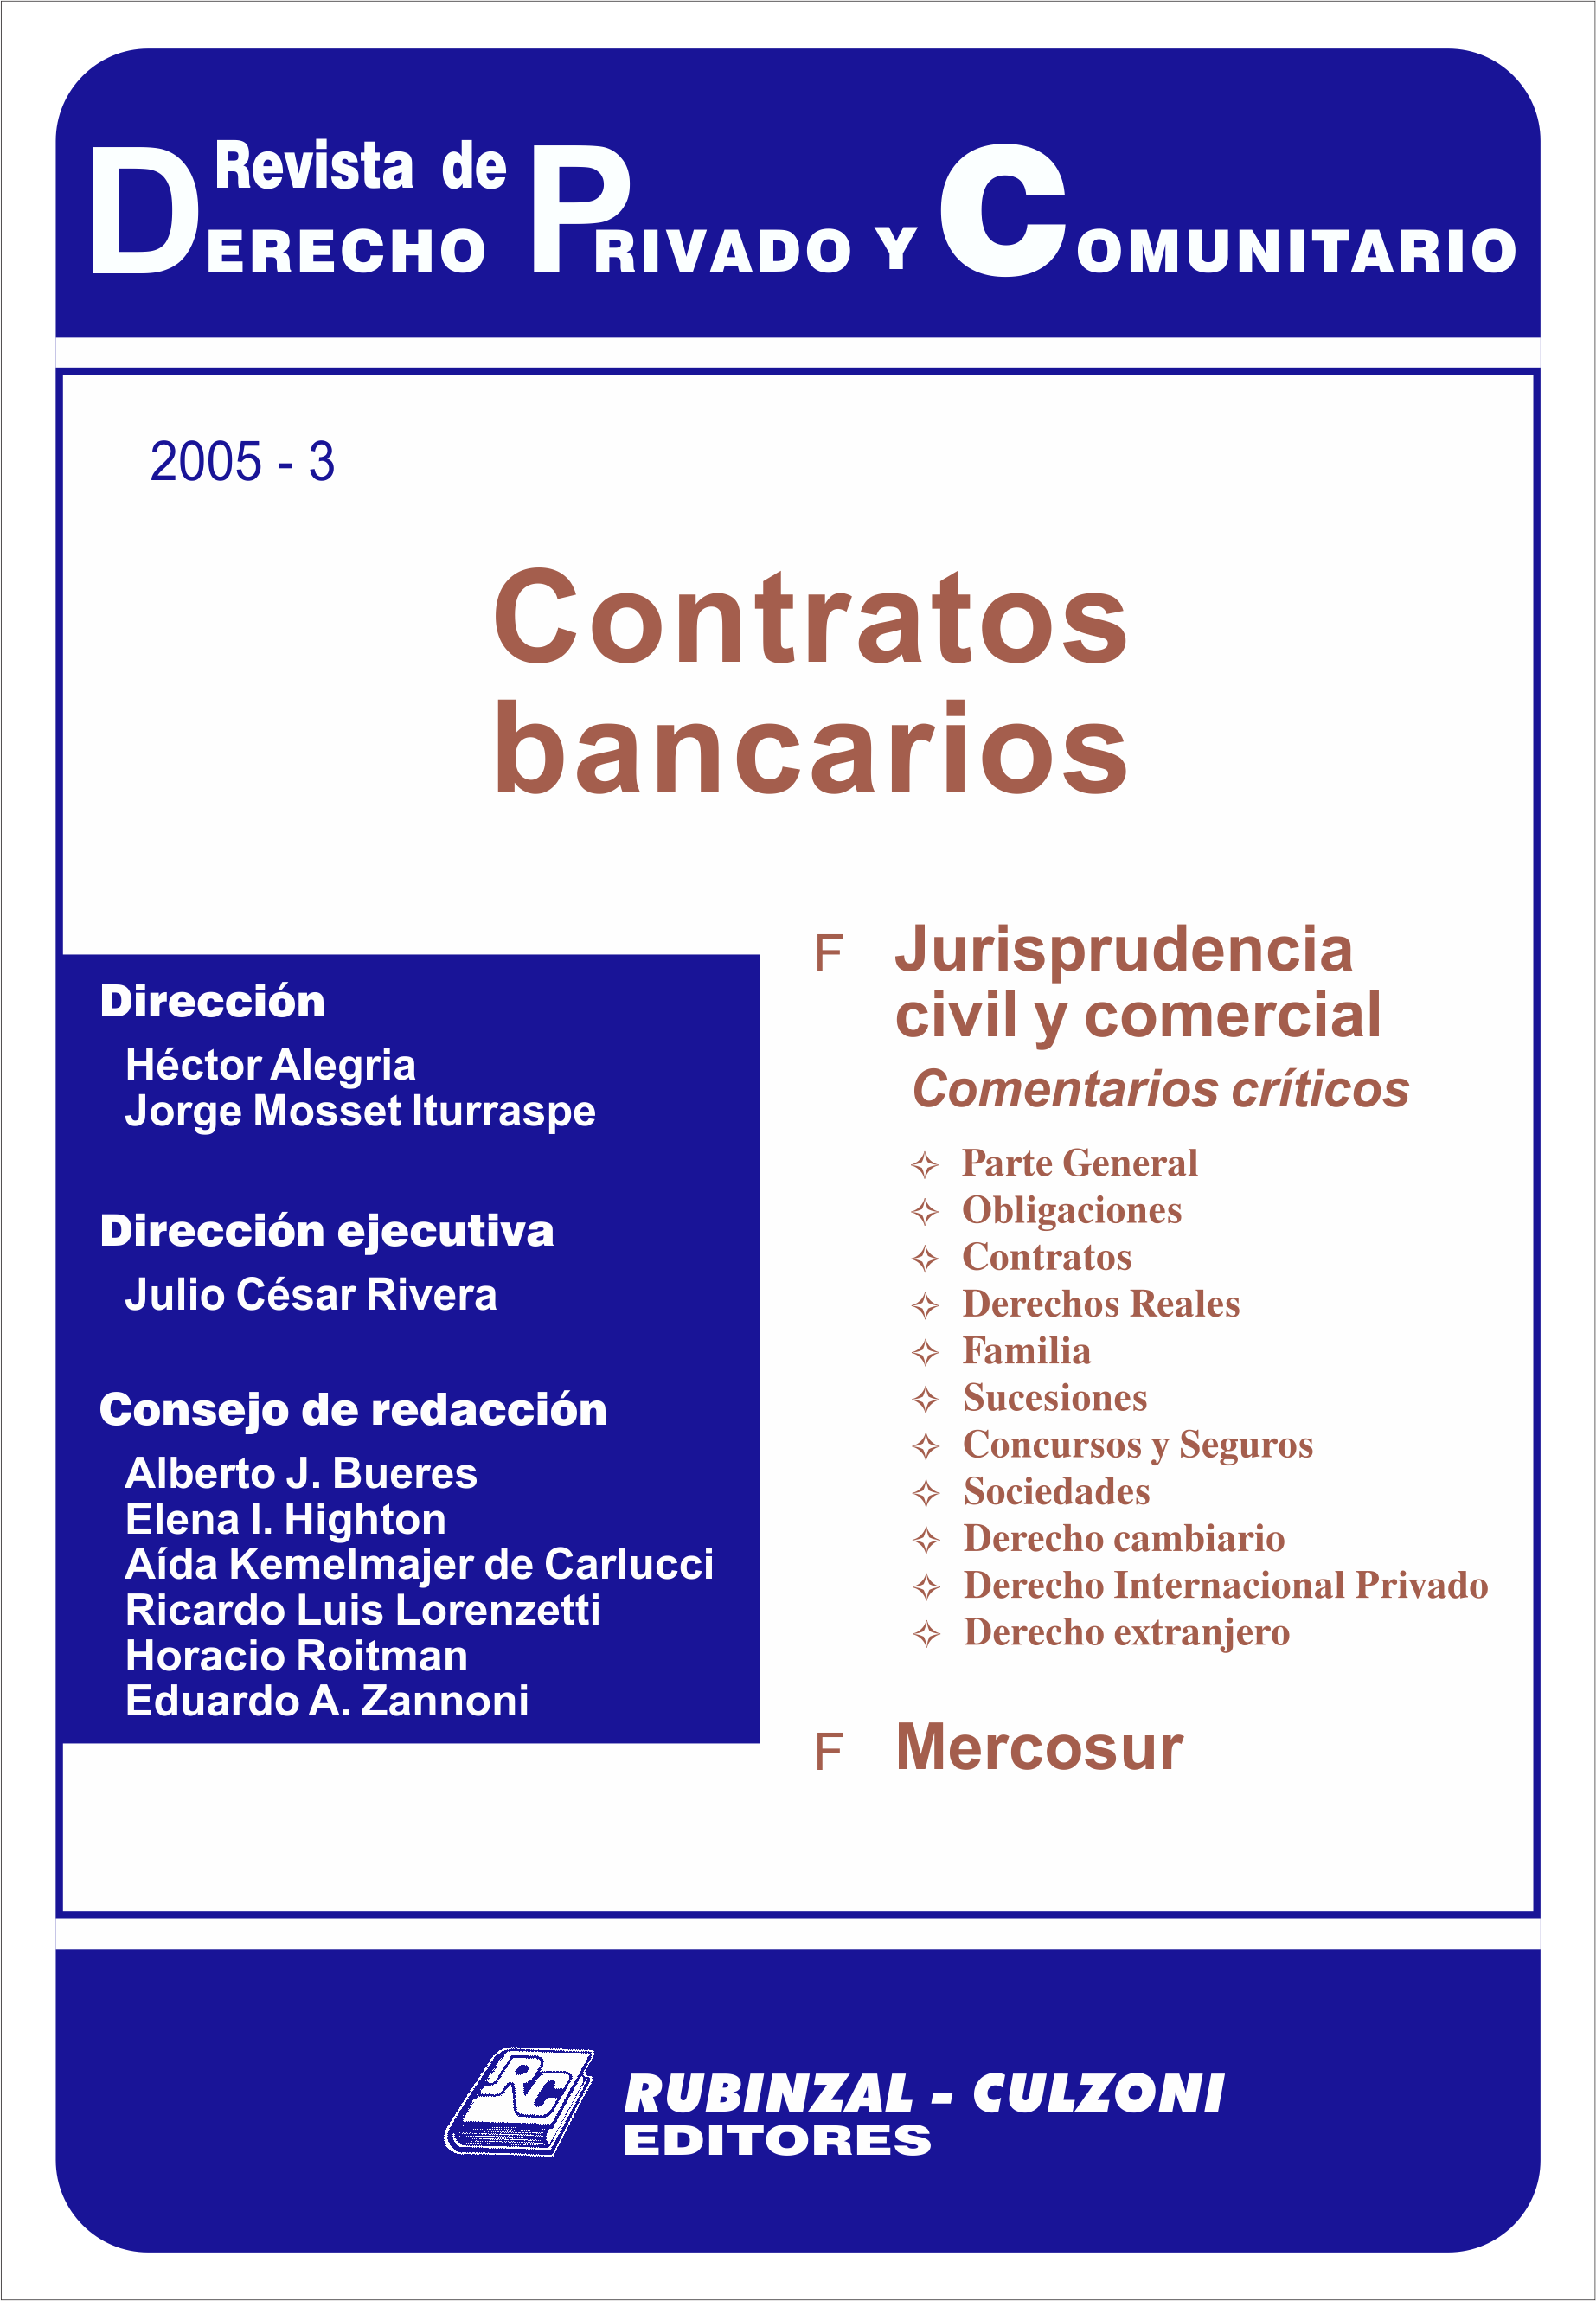 Revista de Derecho Privado y Comunitario - Contratos bancarios.